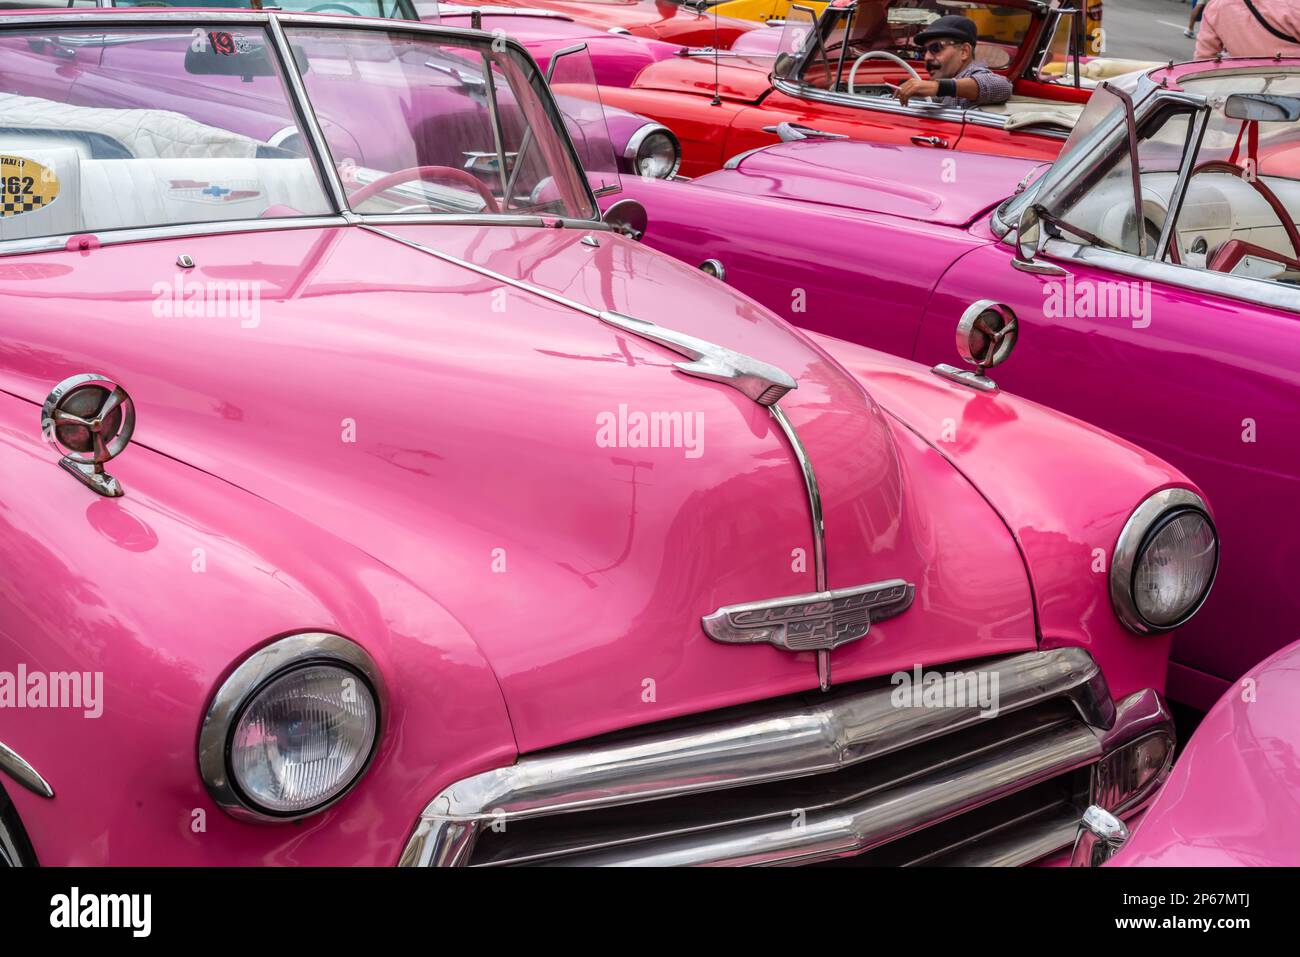 Une convention de voitures Chevrolet classiques roses, la Havane, Cuba, Antilles, Caraïbes, Amérique centrale Banque D'Images